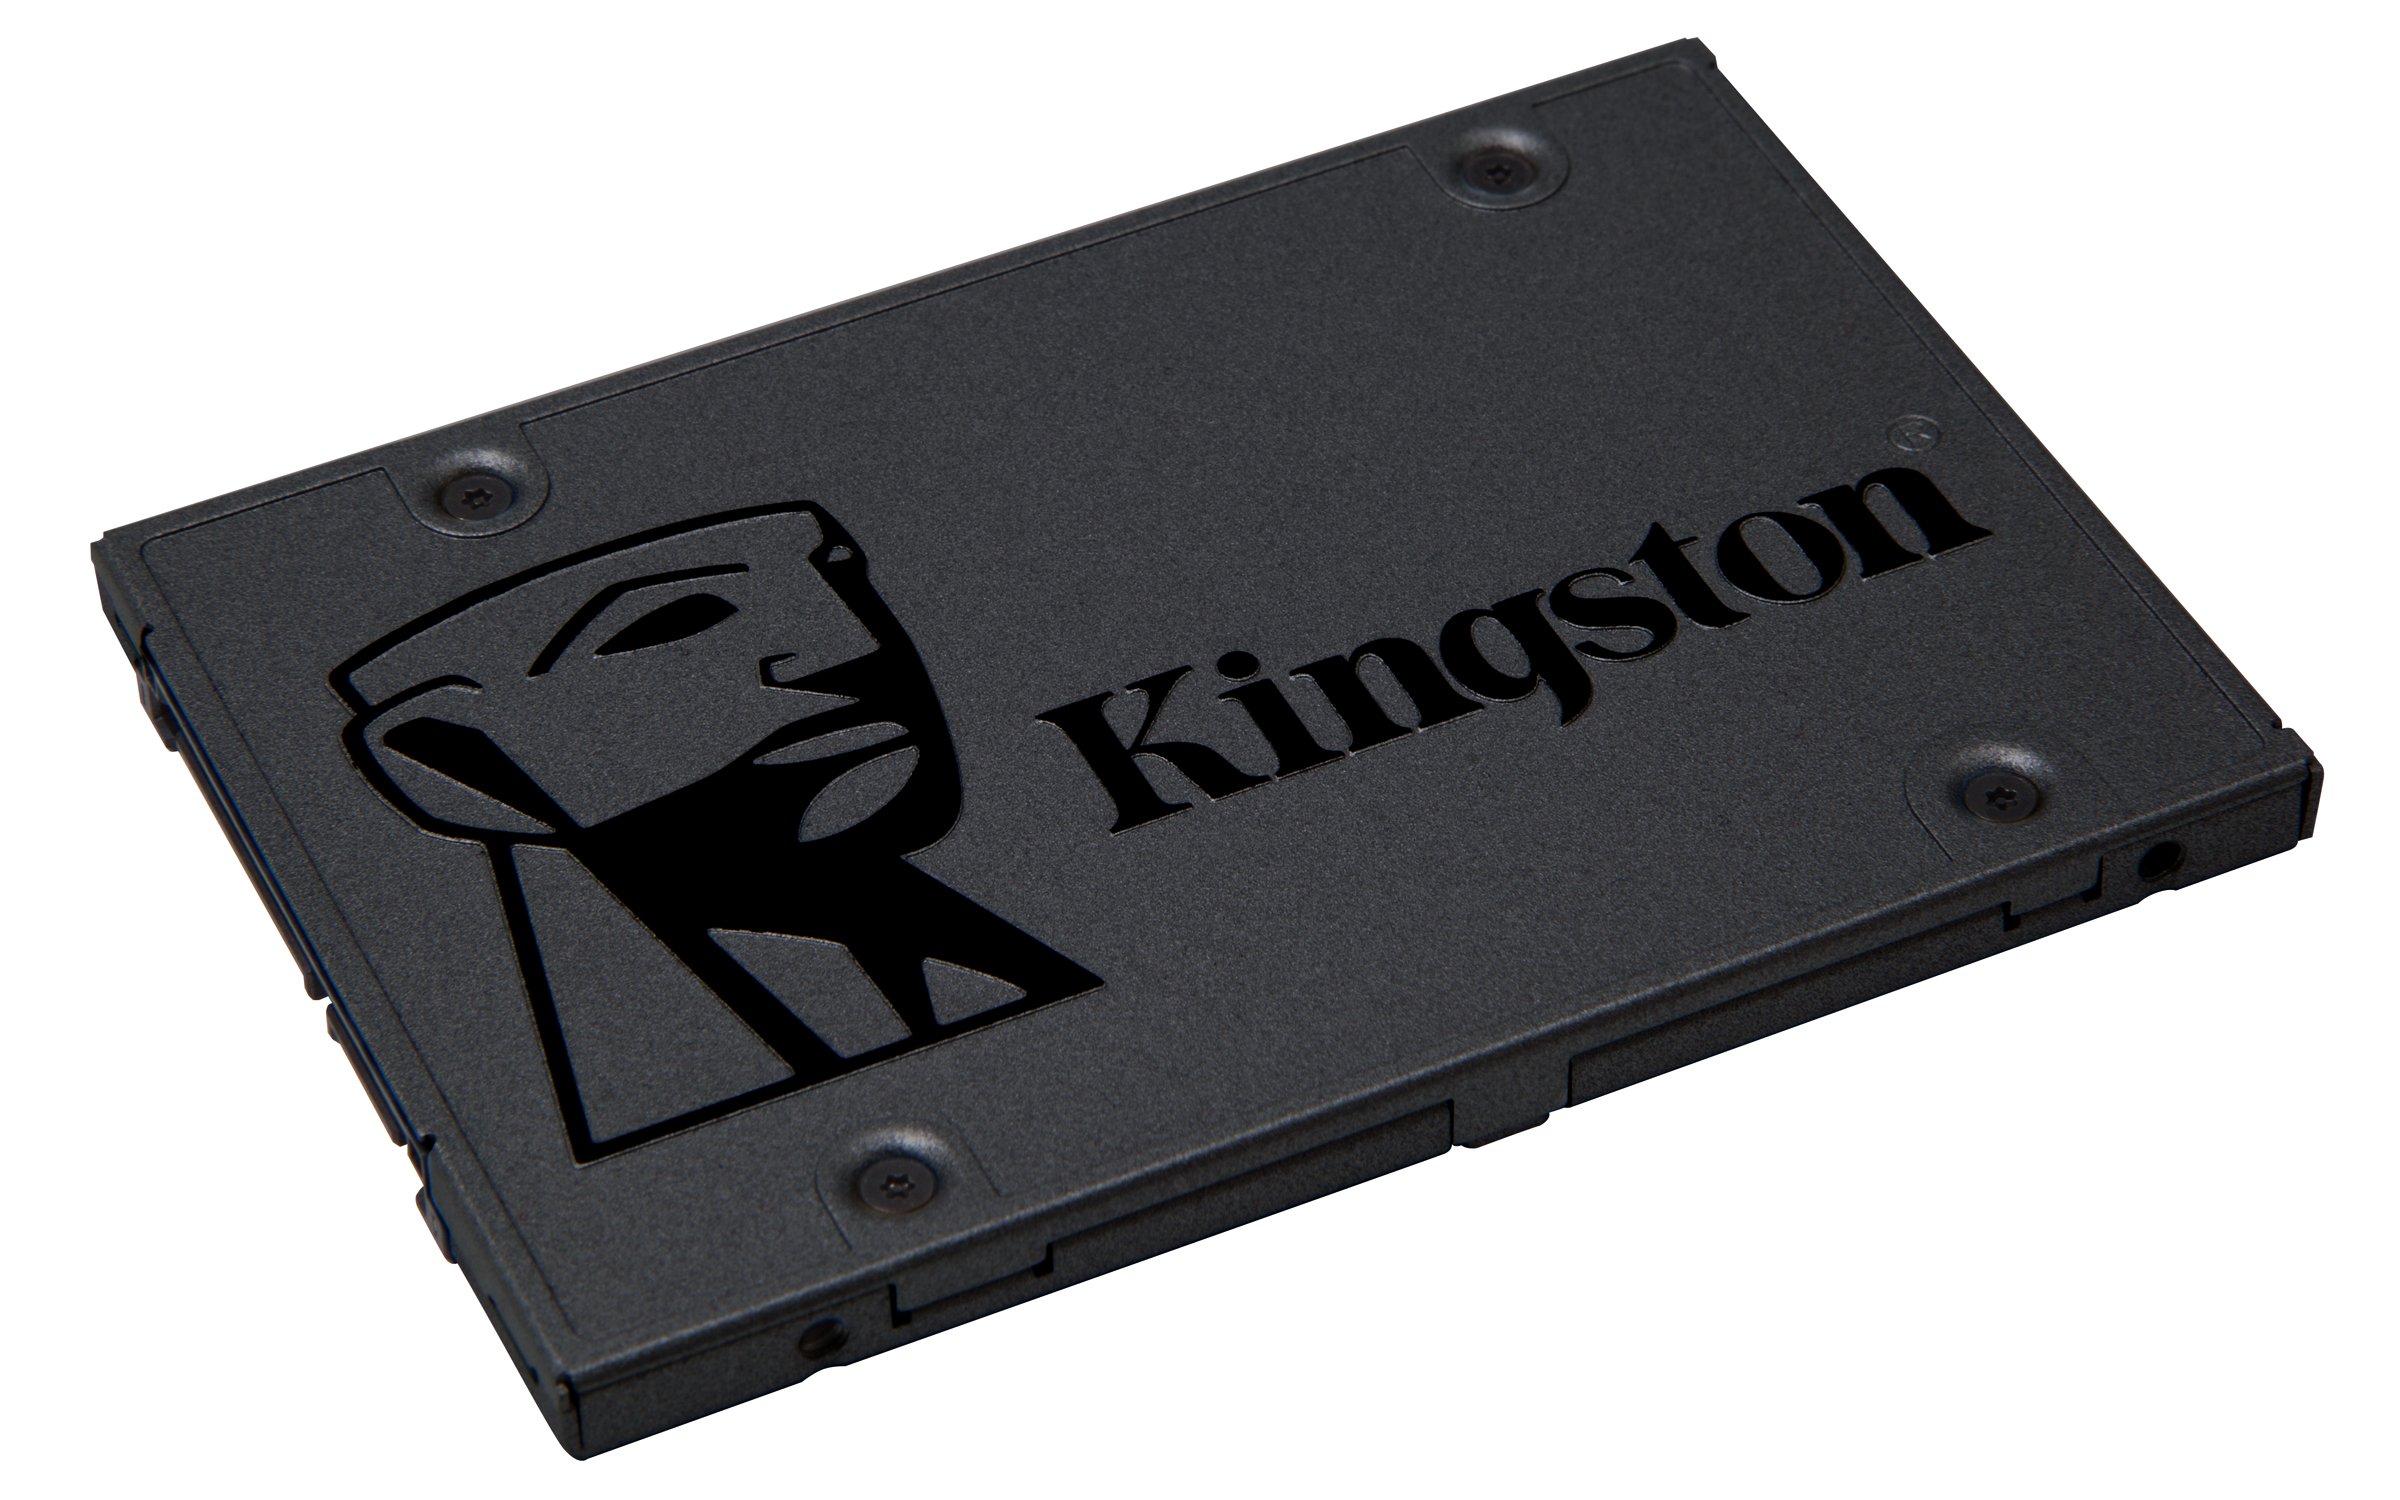 キングストンテクノロジー SSD Q500 960GB 2.5インチ 7mm SATA3 3D NAND採用 SQ500S37960G 削除削除品 3年